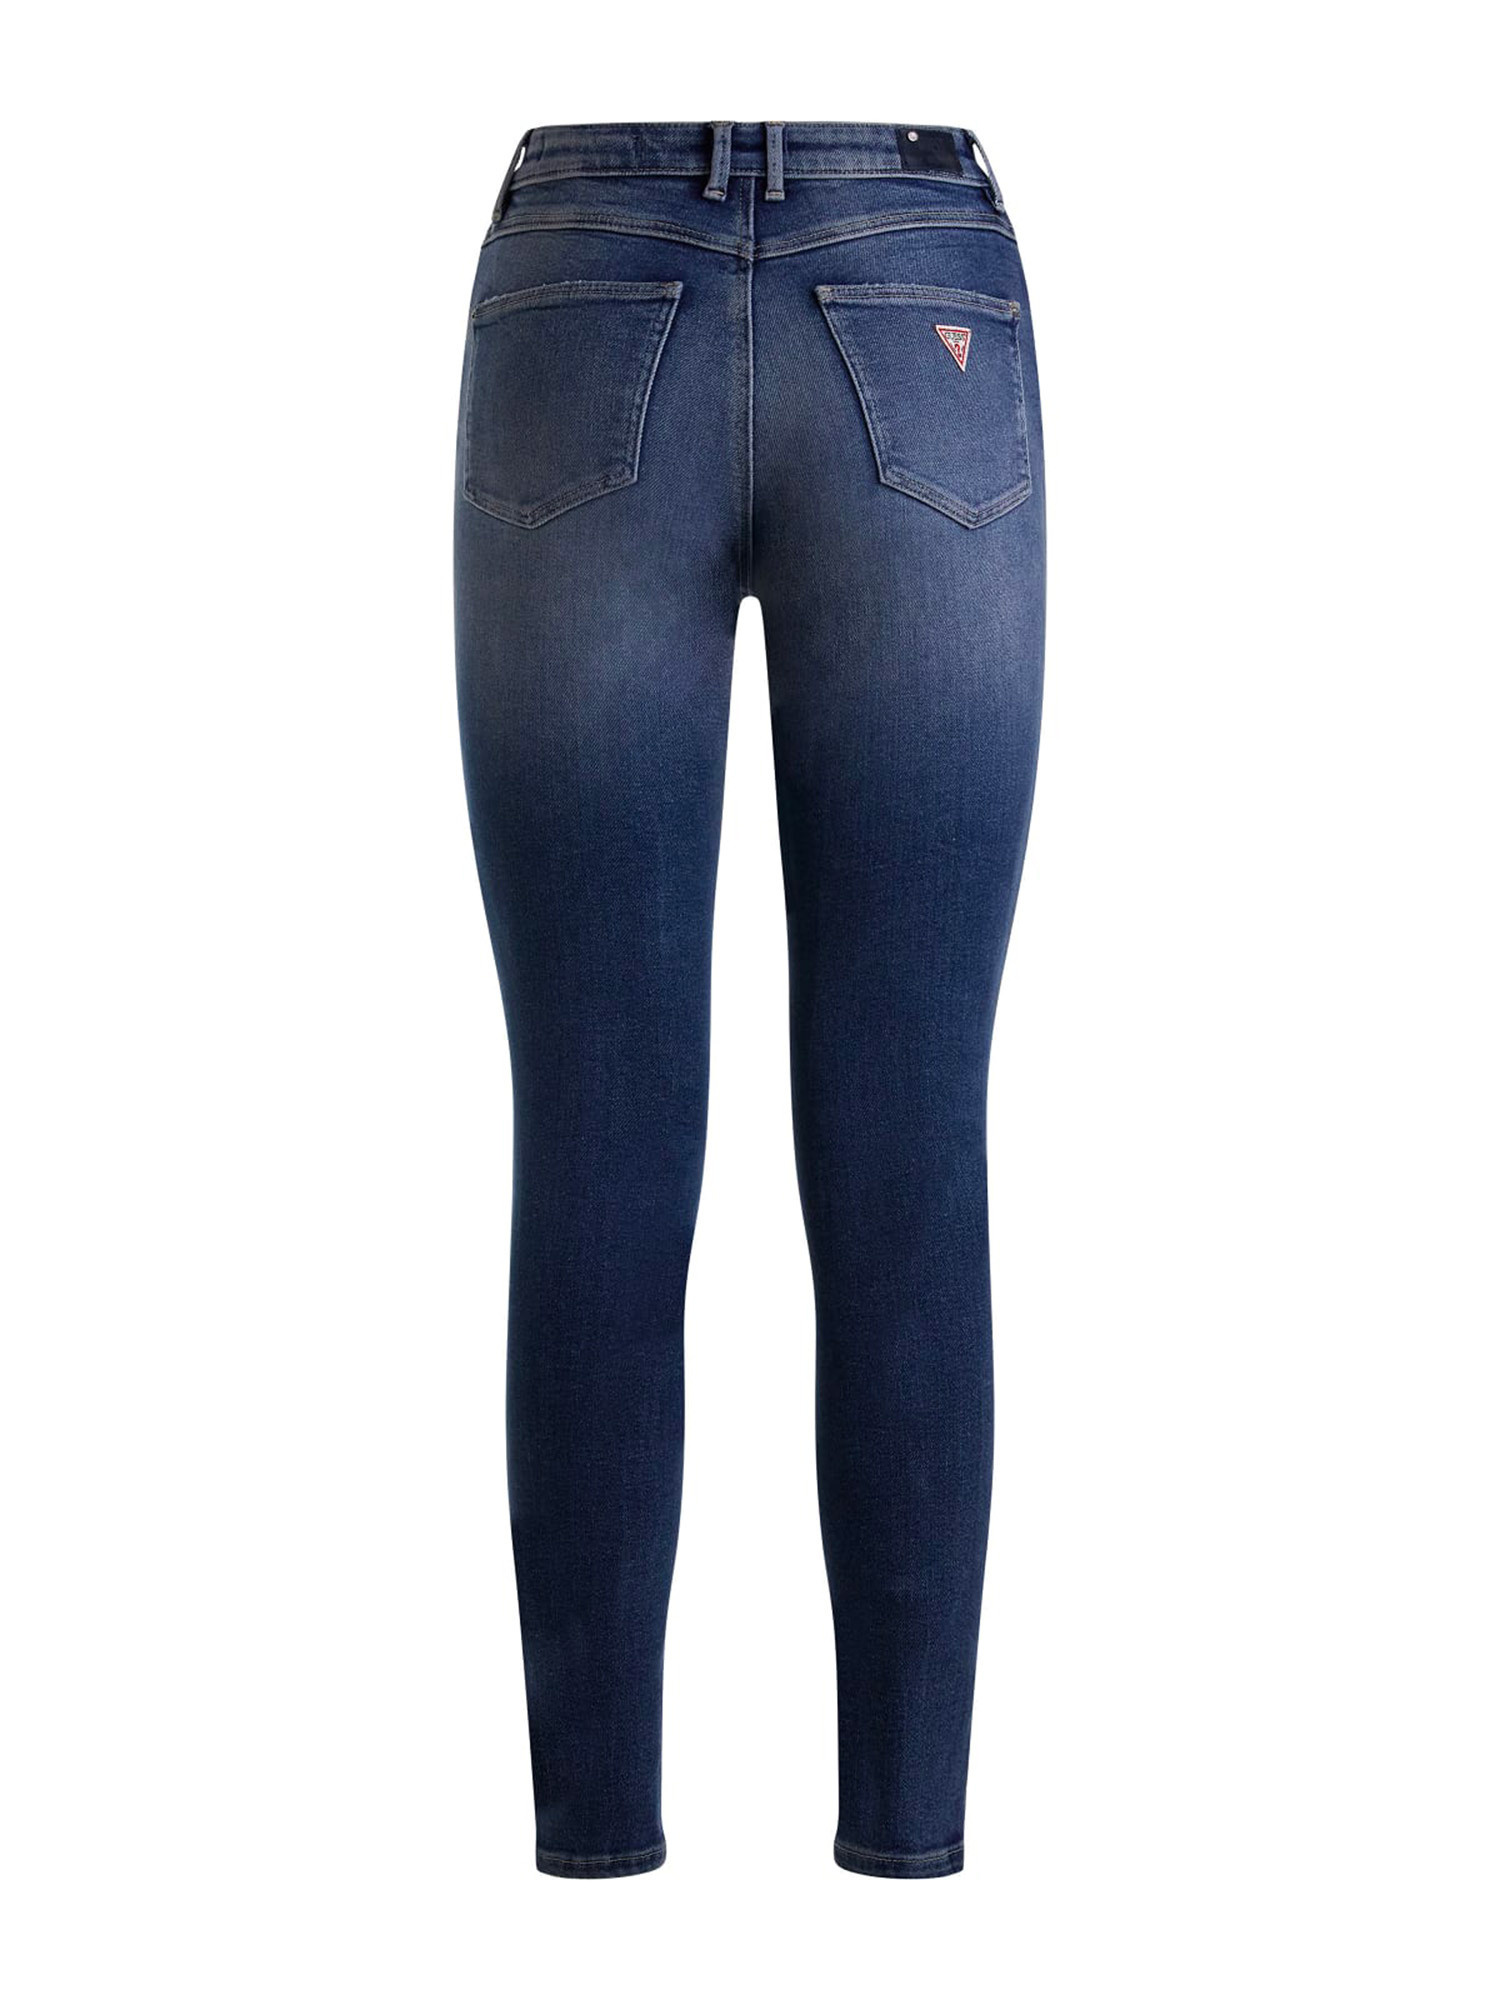 Guess - 5-pocket skinny jeans, Denim, large image number 1